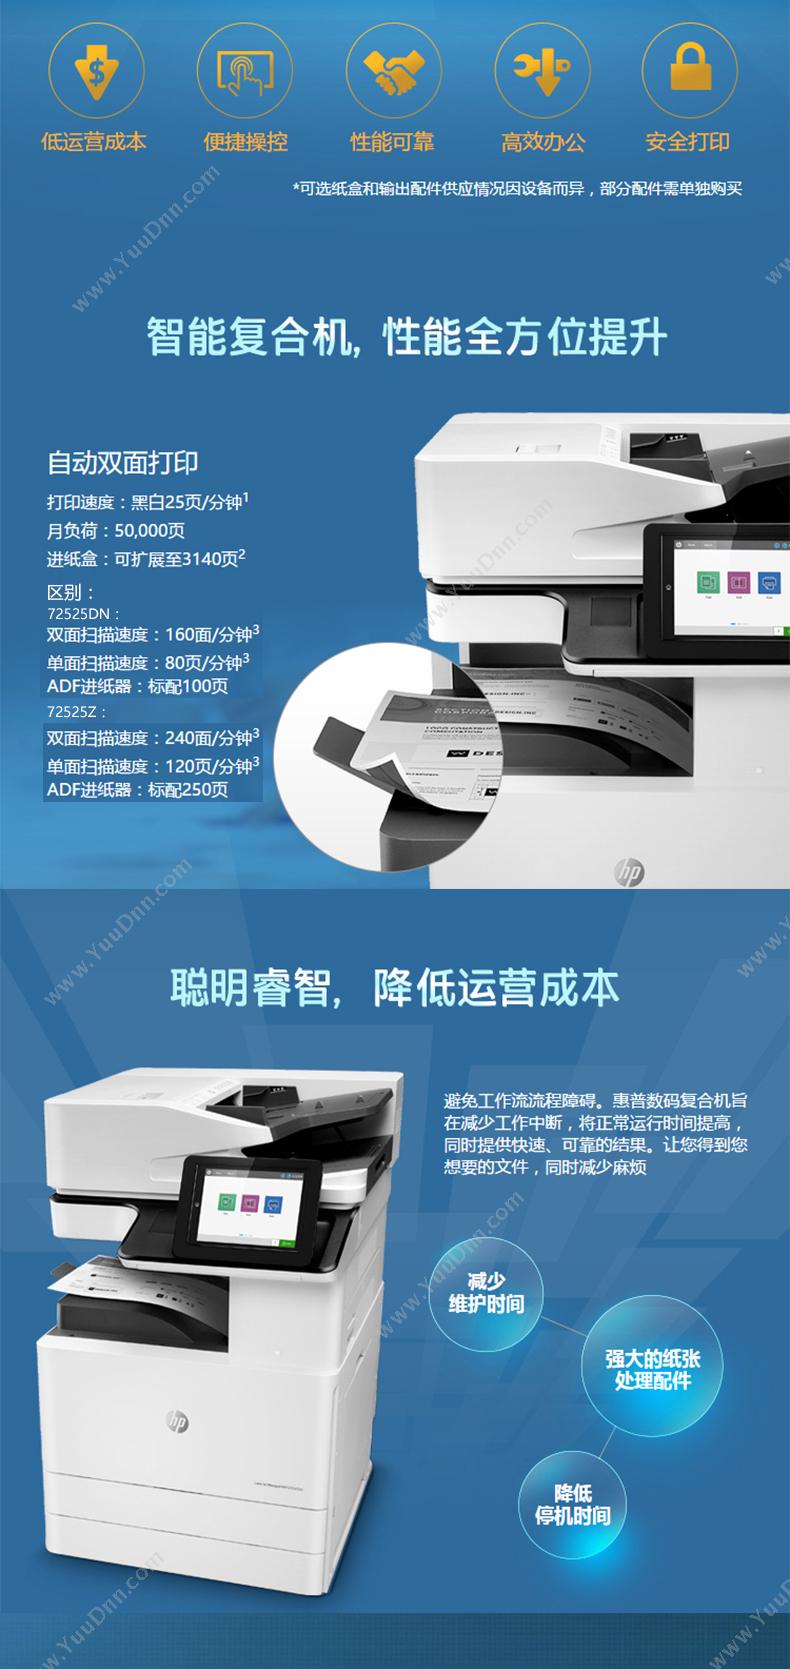 惠普 HP A3X3A60AE72525dn(带服务) 激光复合打印机